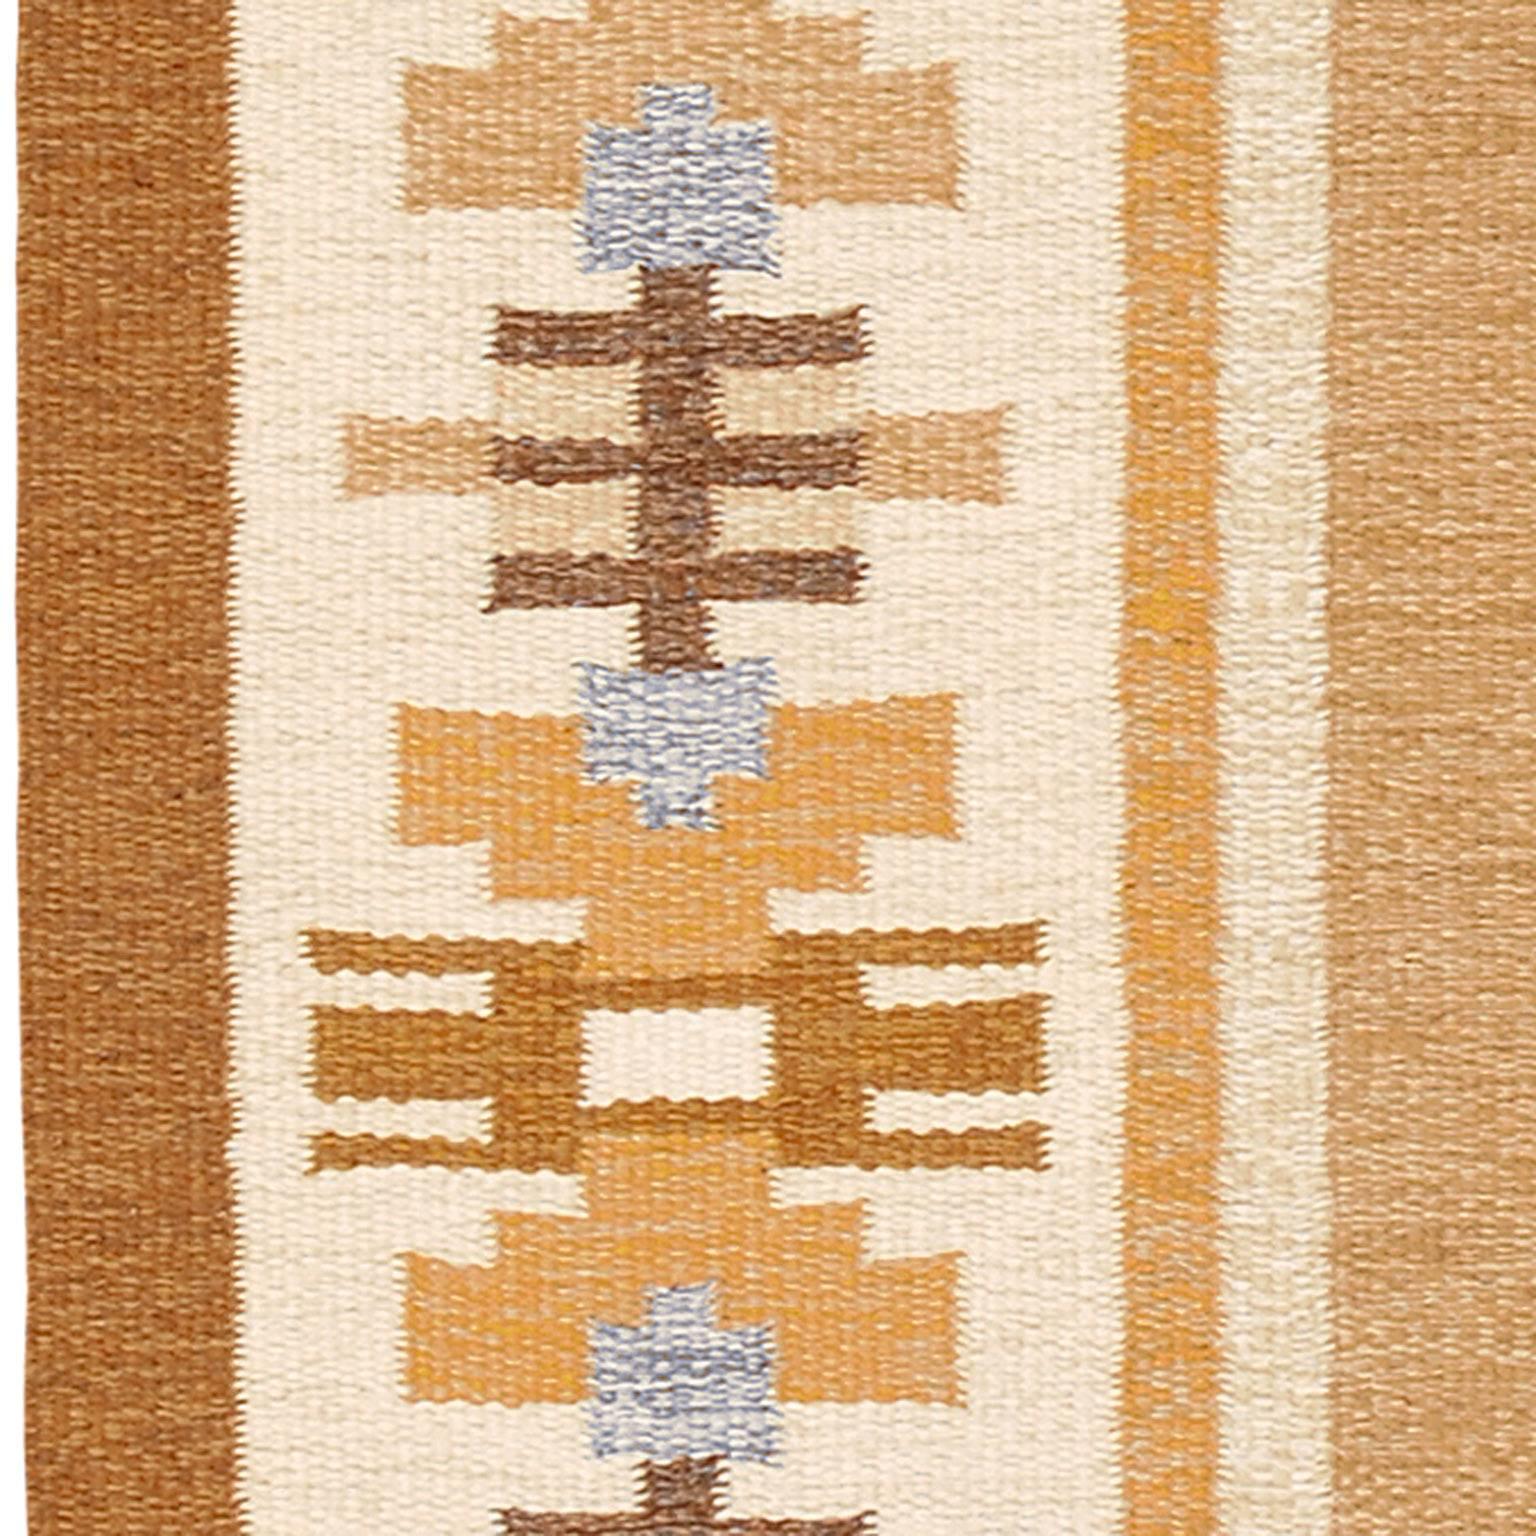 Scandinavian Modern Mid 20th Century Swedish Flat-Weave Carpet by Ingegerd Silow For Sale